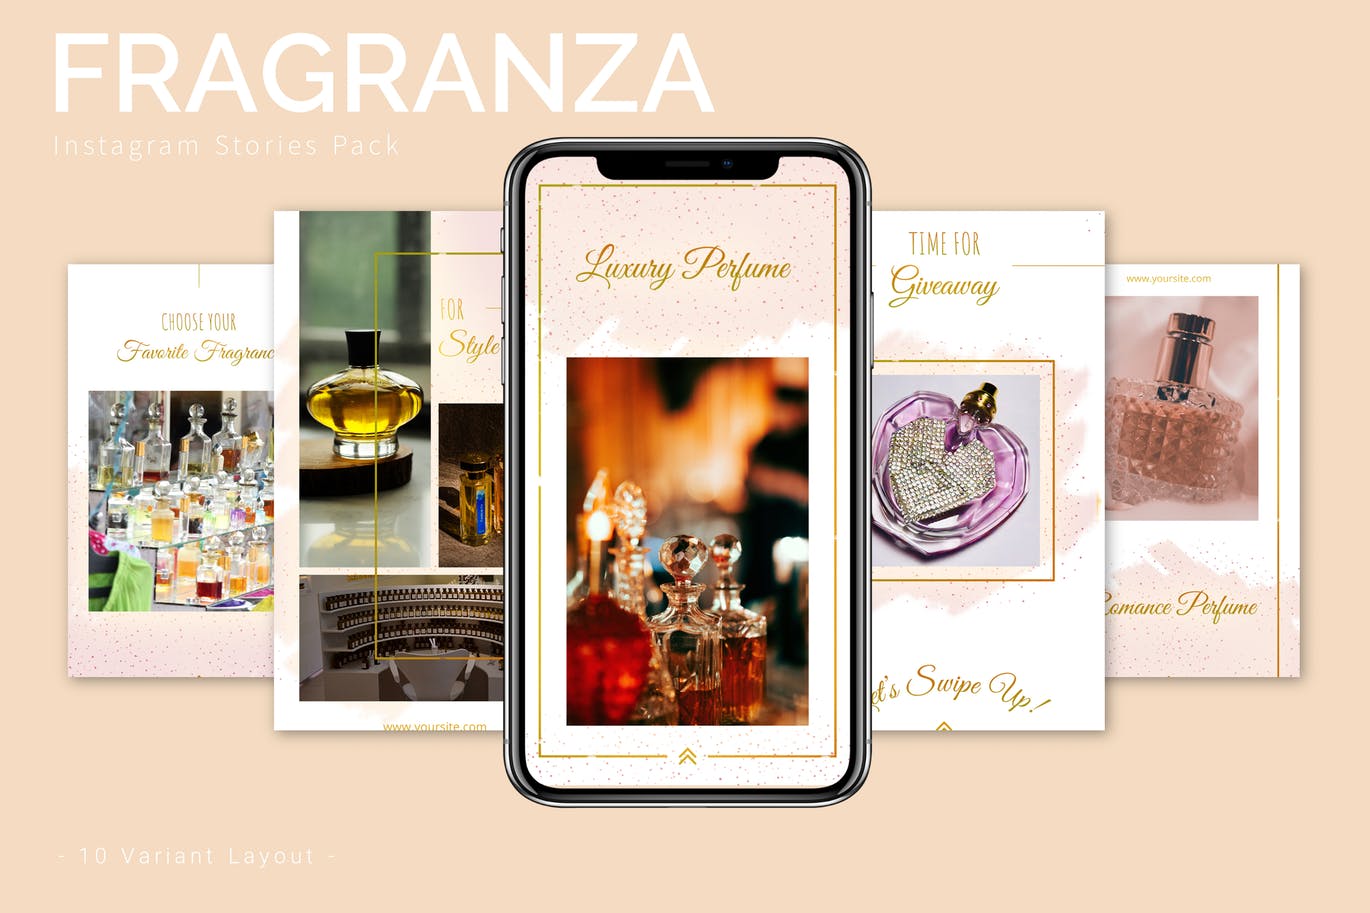 香水品牌故事推广Instagram设计素材包 Fragranza – Instagram Story Pack插图